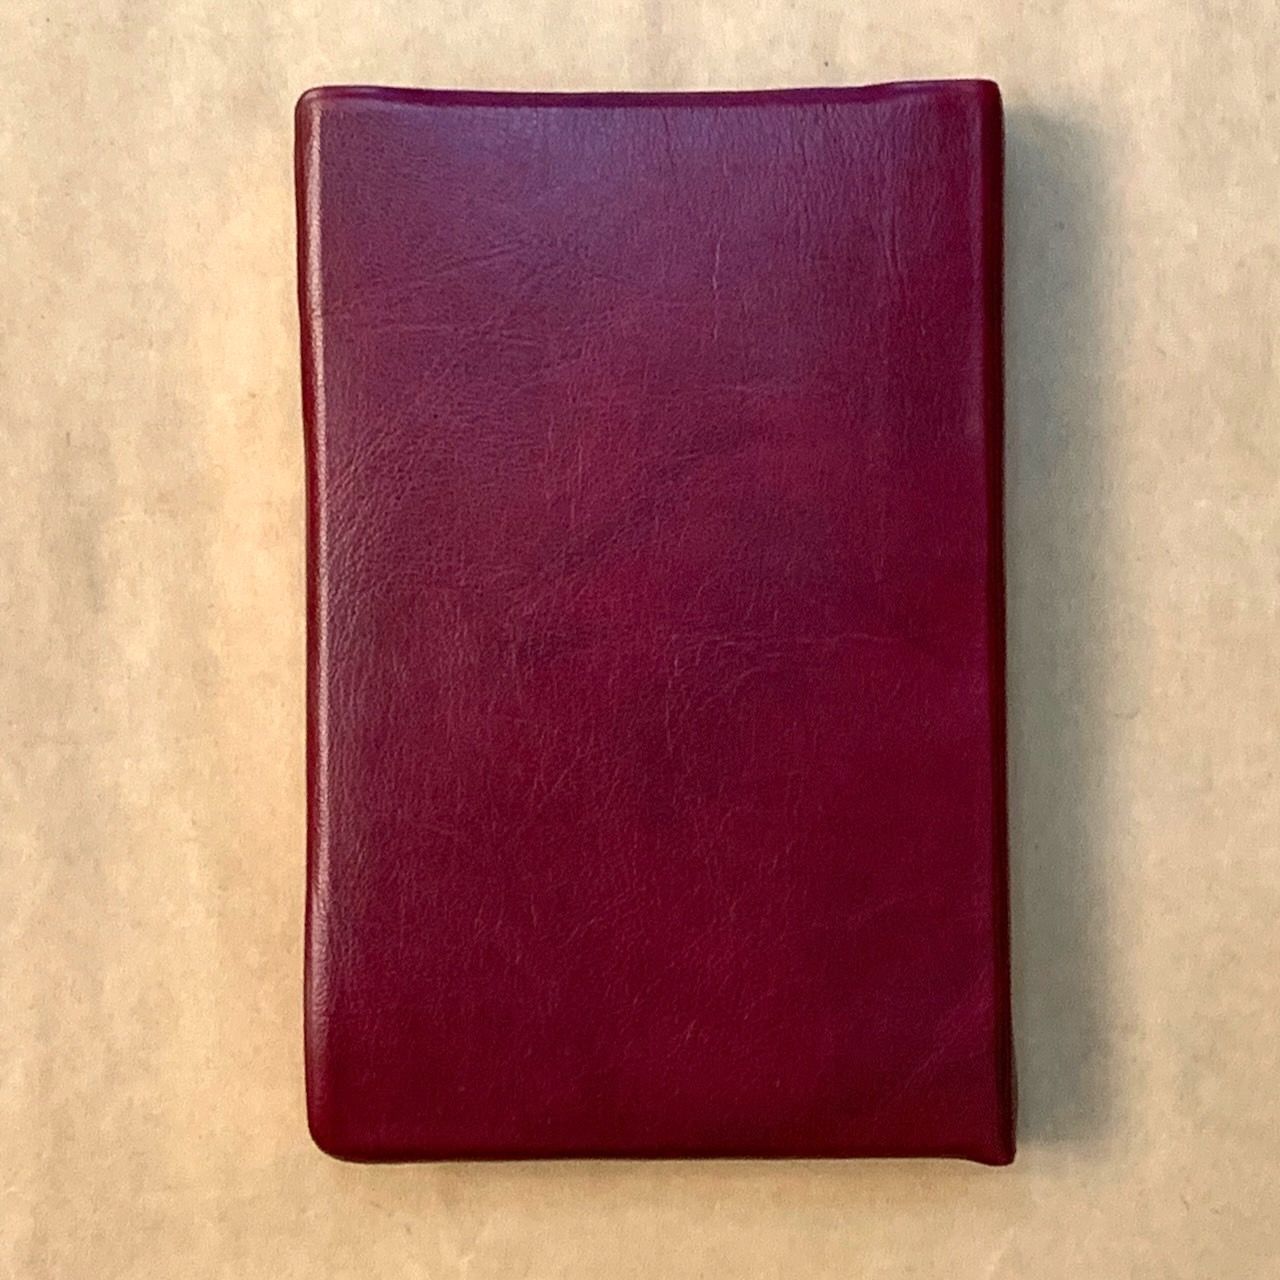 Библия — цвет бордо, переплет иск. кожи без индексов